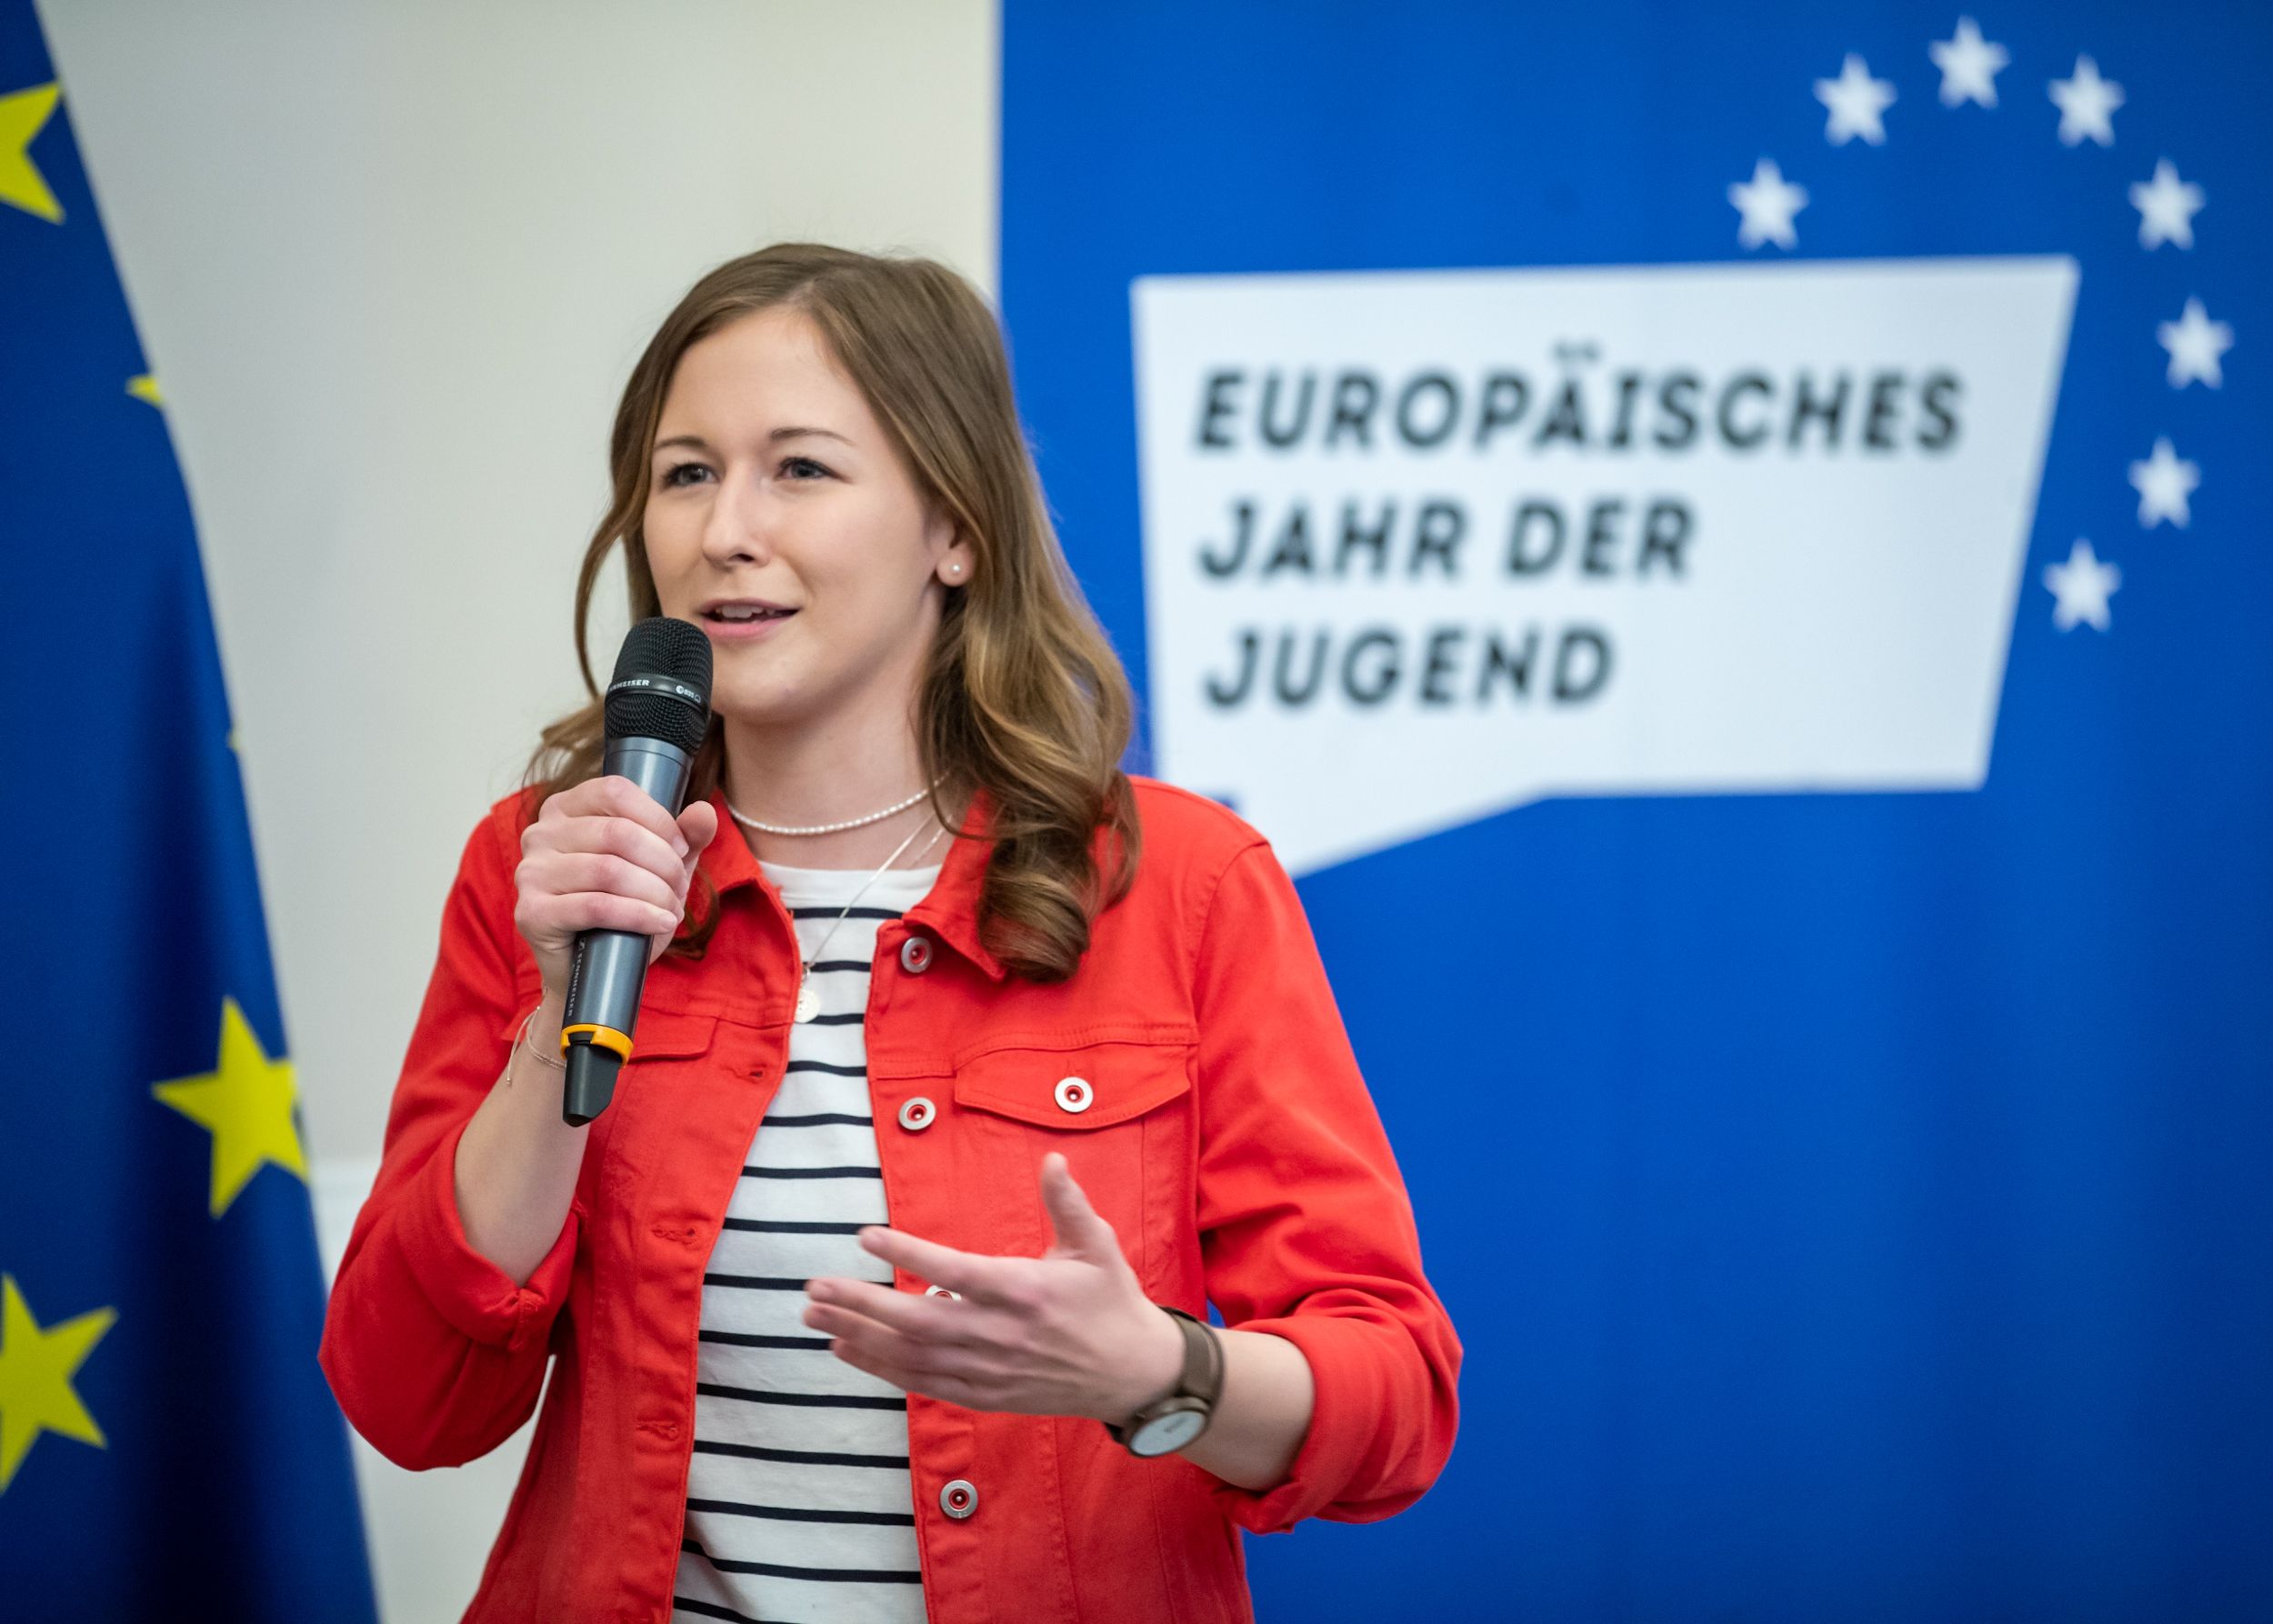 Staatssekretärin Claudia Plakolm betont die Wichtigkeit von Zusammenhalt in der europäischen Union und ruft zur Einreichung von Projekten für den Jugendpreis 2022 auf. Foto: BKA/ Arno Melicharek